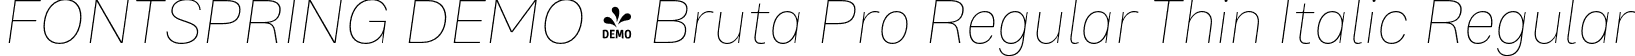 FONTSPRING DEMO - Bruta Pro Regular Thin Italic Regular font | Fontspring-DEMO-brutaproregular-thinitalic.otf